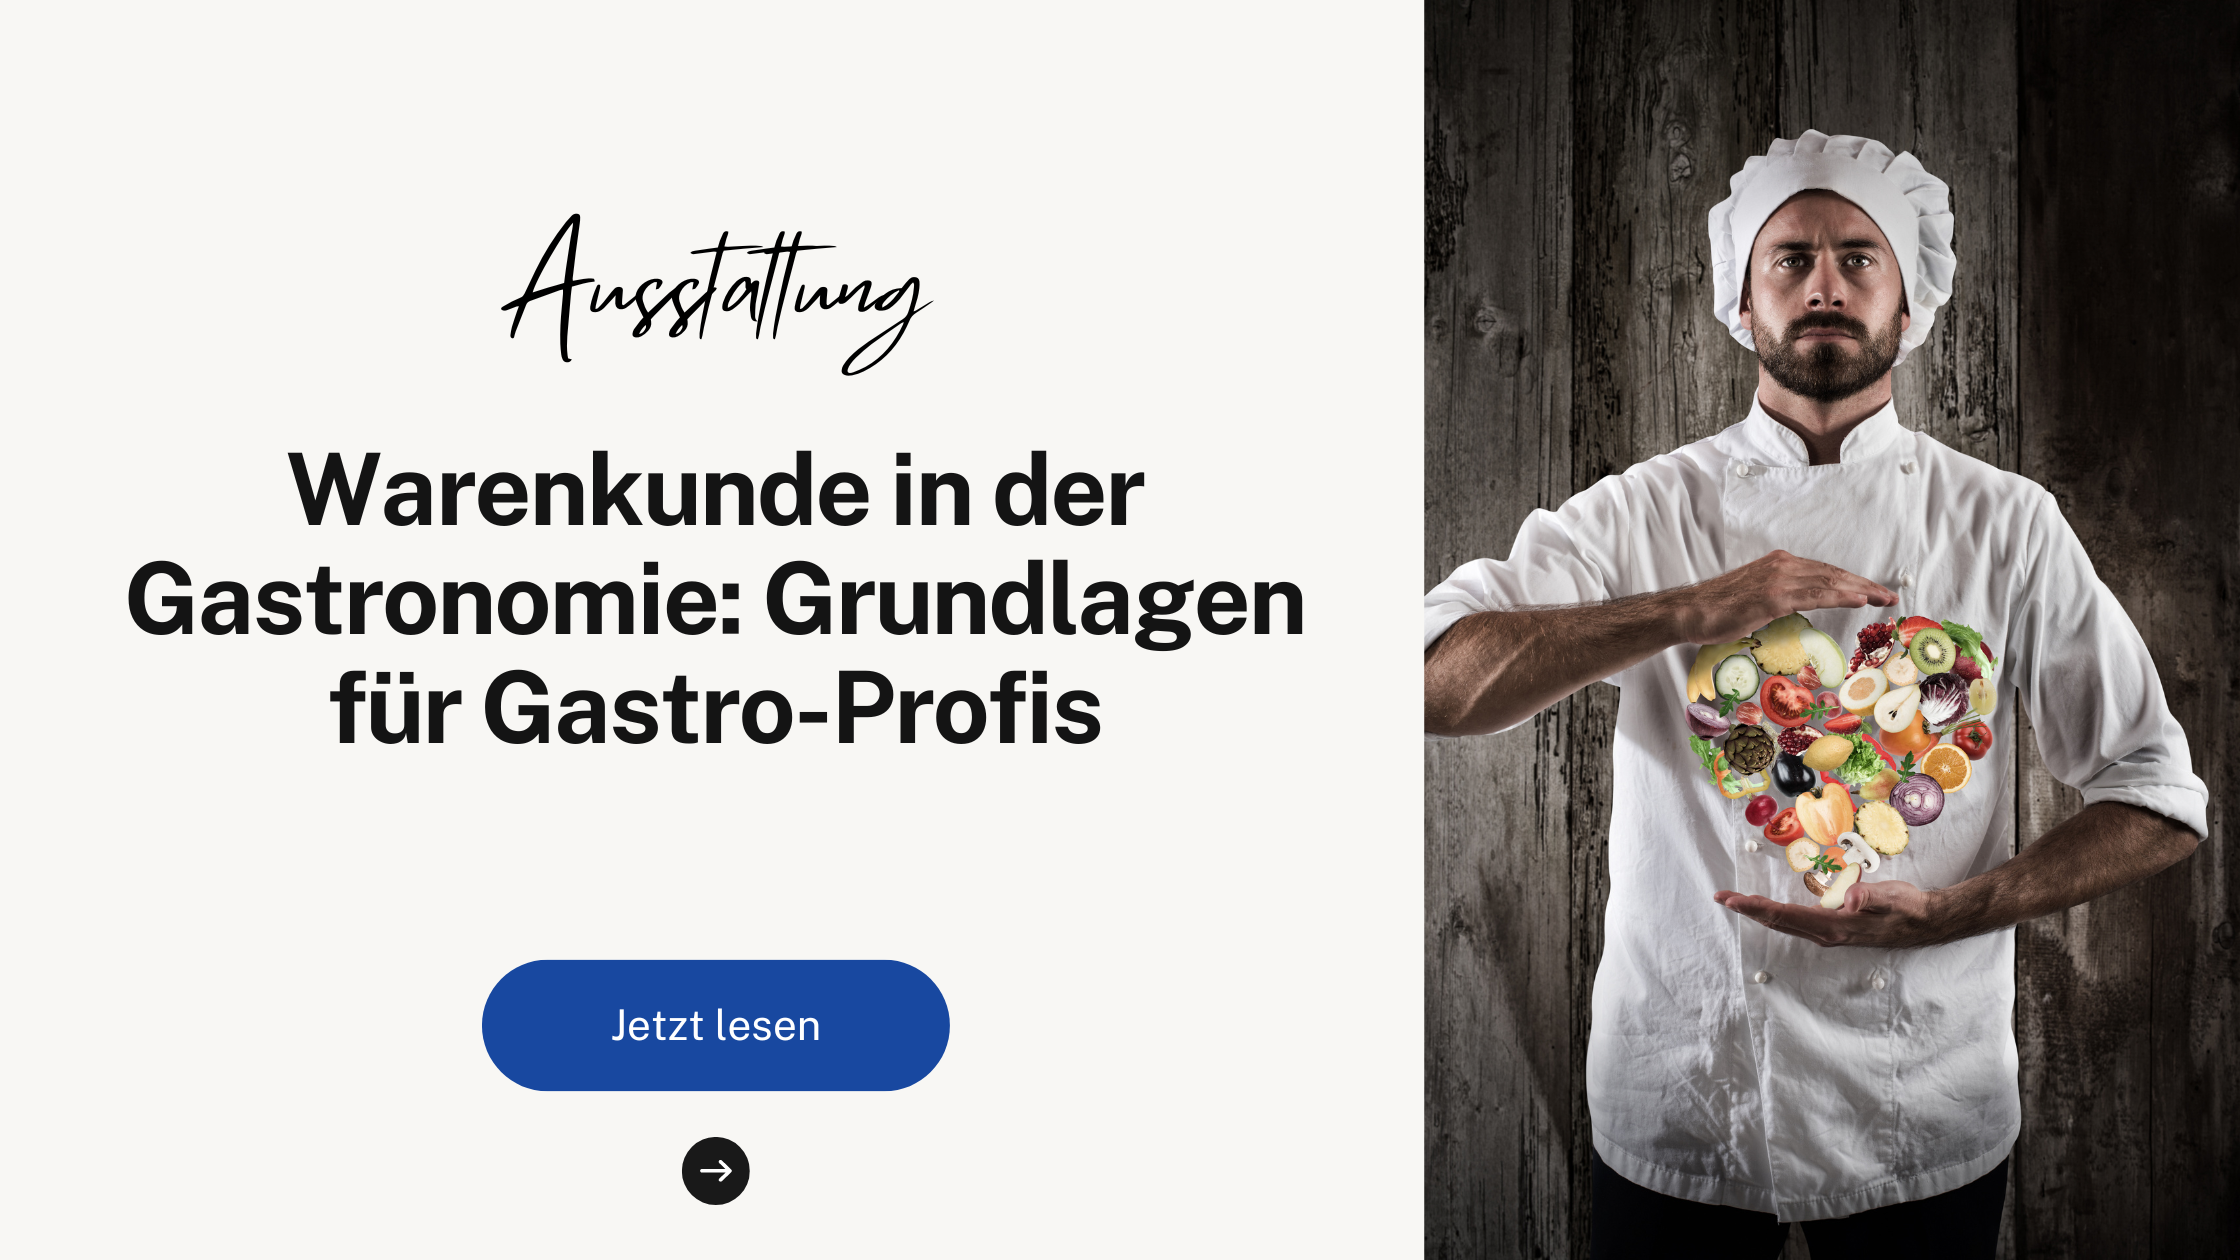 Warenkunde in der Gastronomie: Grundlagen für Gastro-Profis